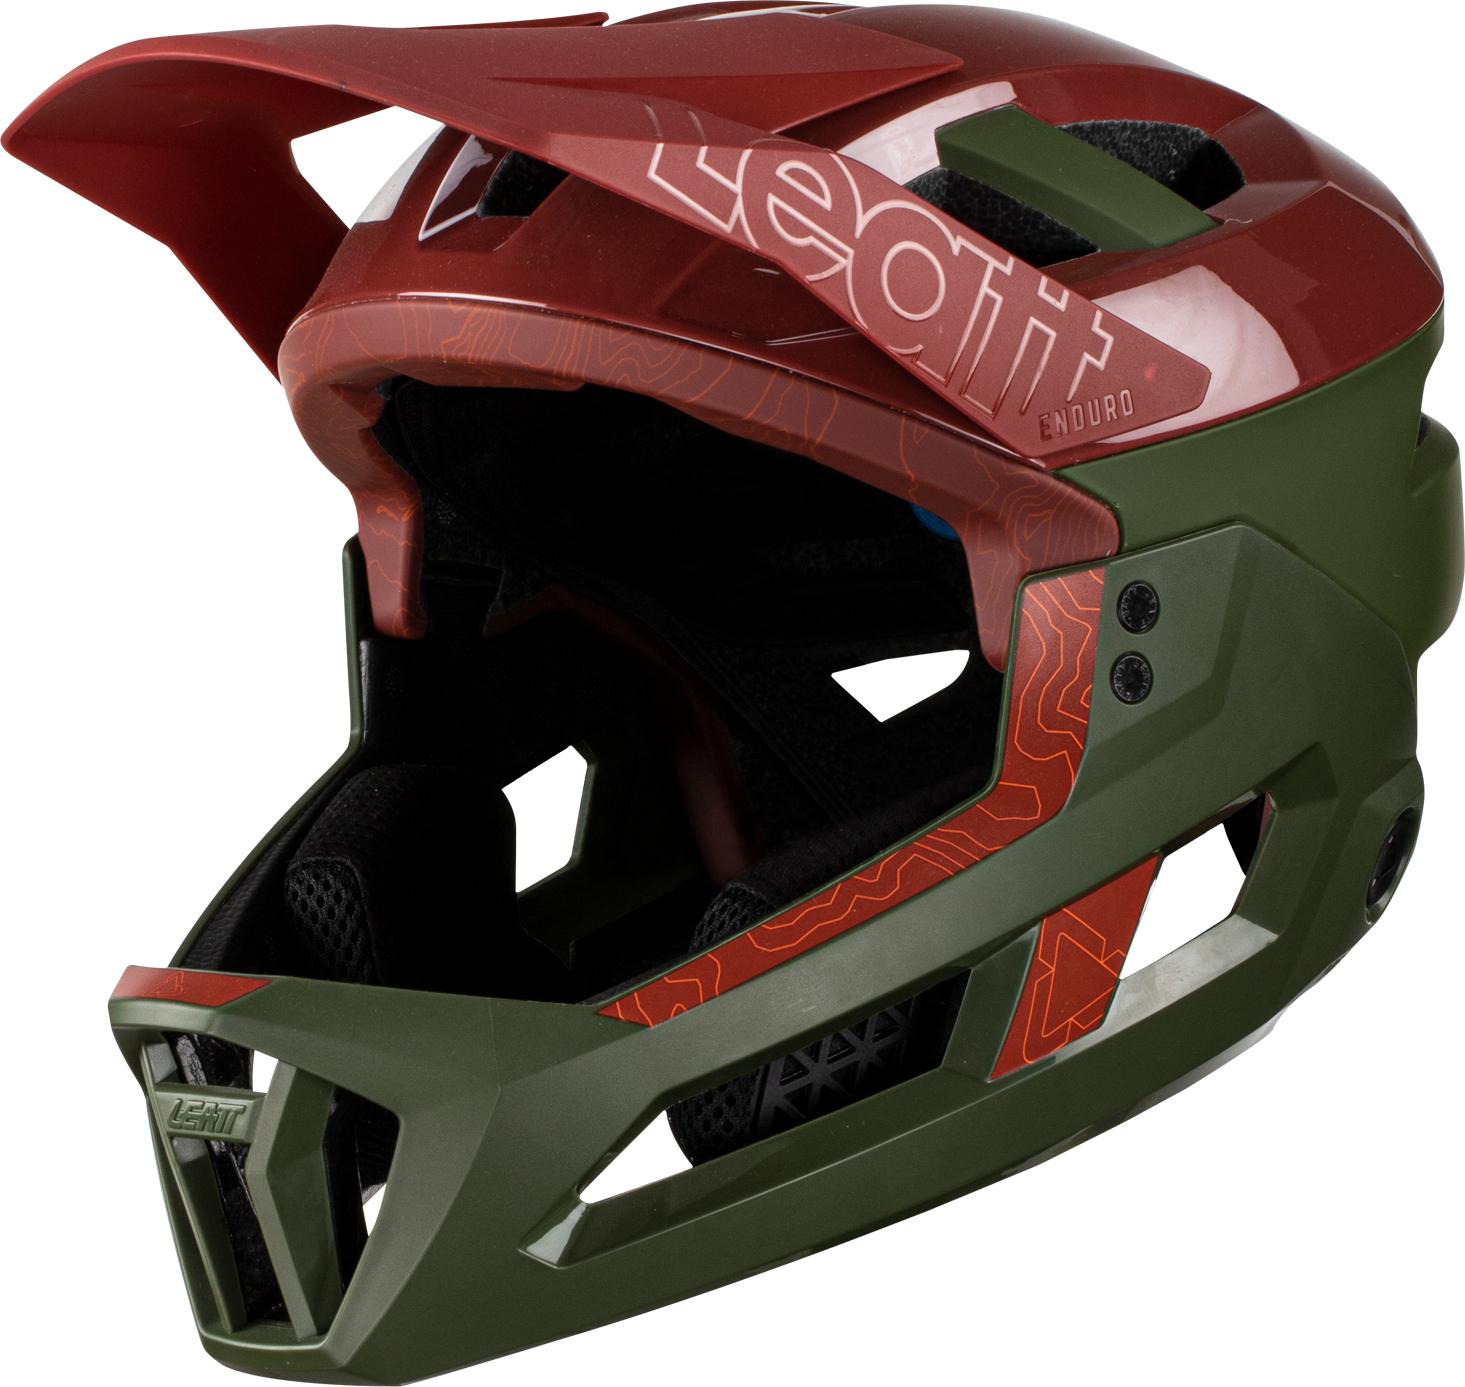 Leatt Mtb Enduro 3.0 Helmet - Pine